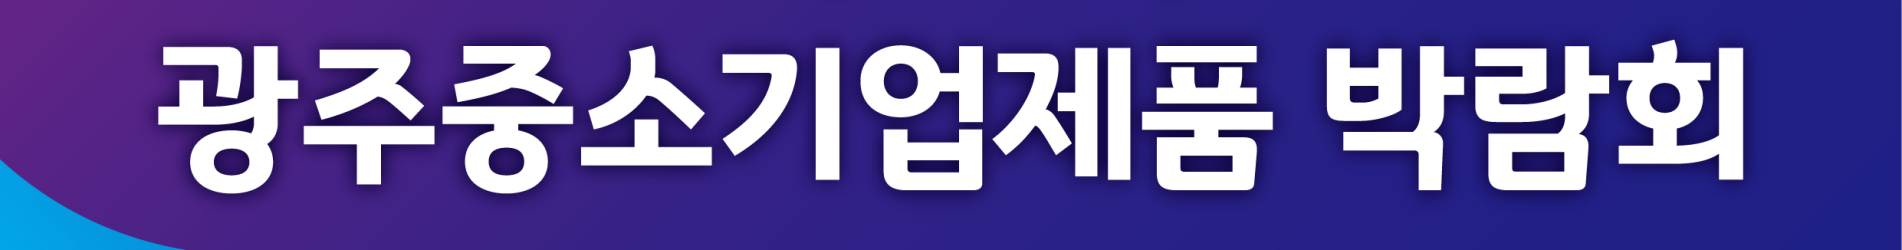 제13회 광주중소기업제품박람회